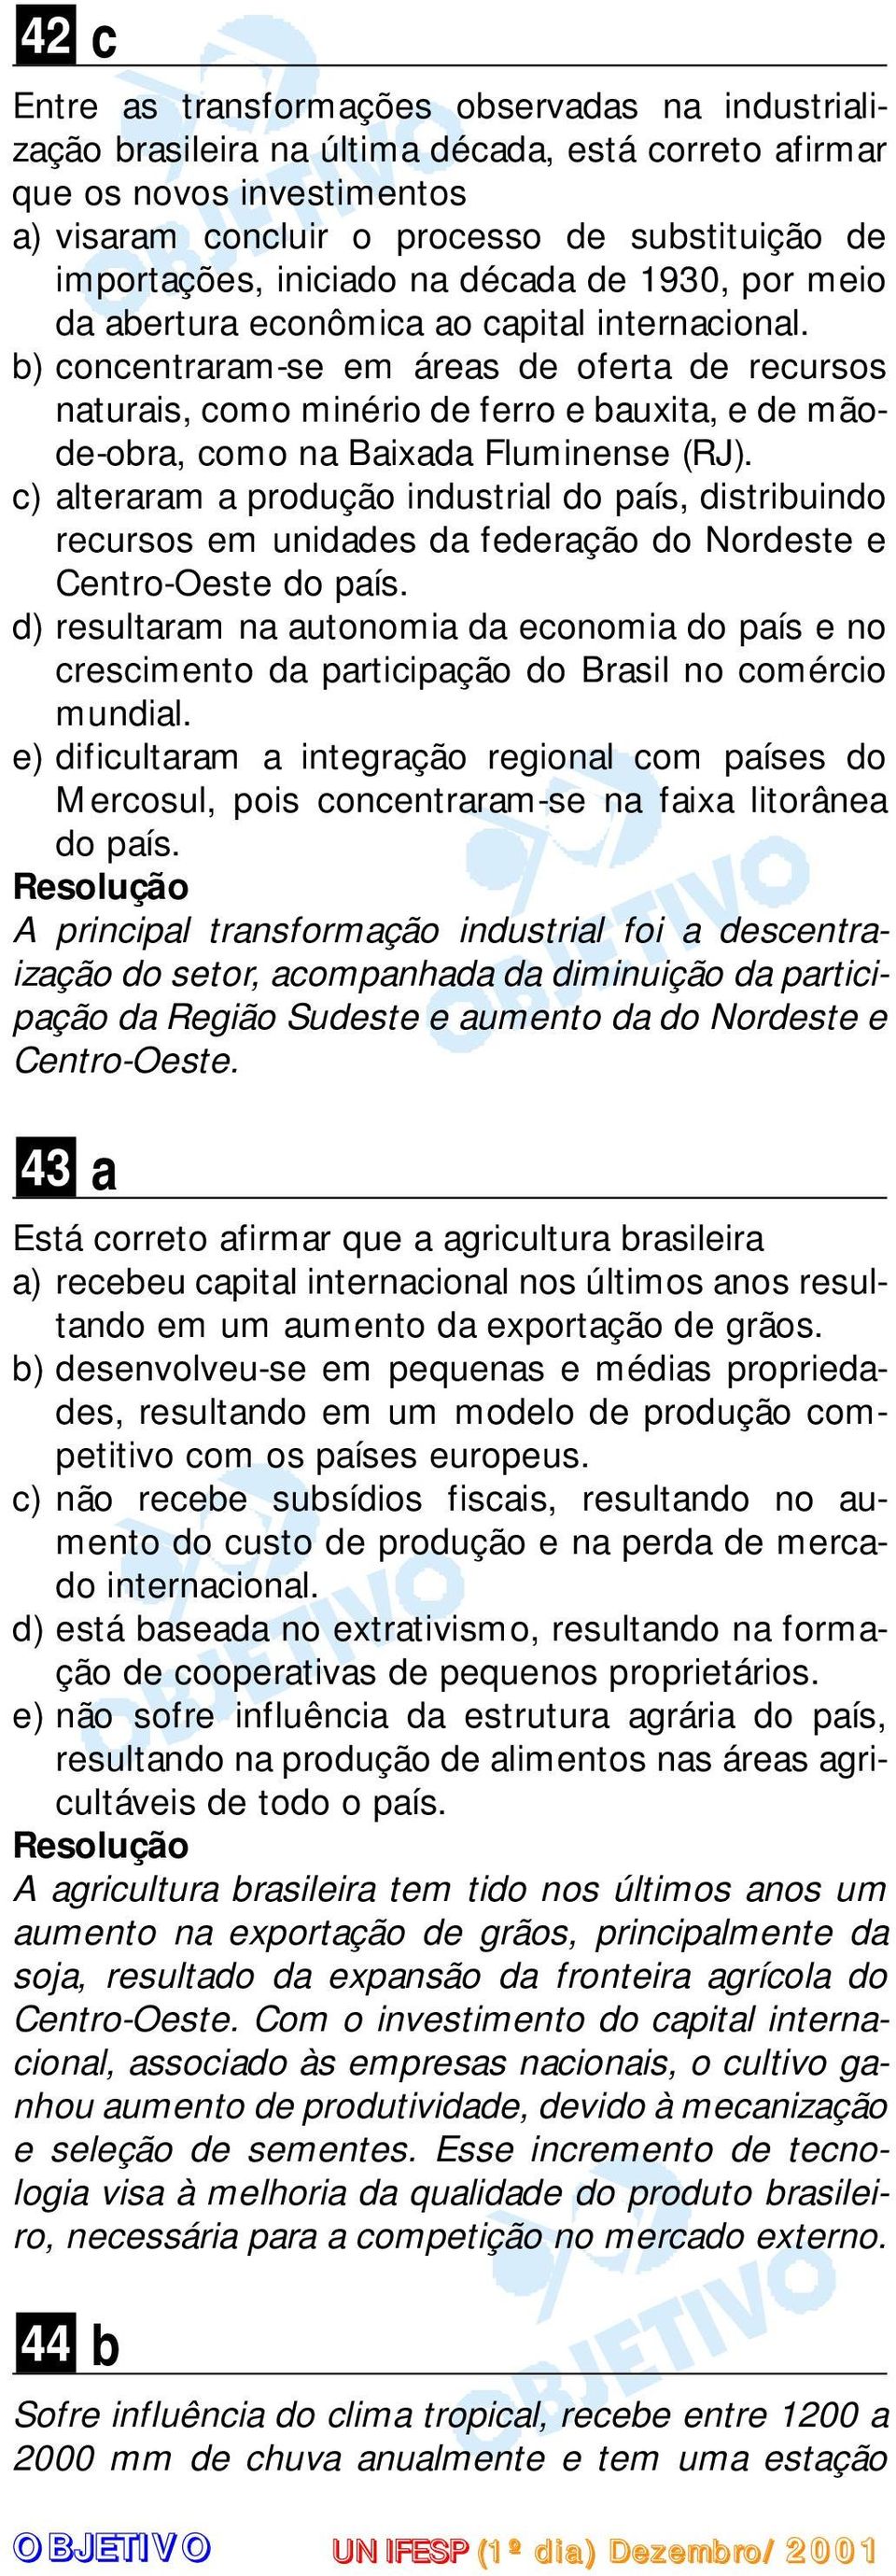 b) concentraram-se em áreas de oferta de recursos naturais, como minério de ferro e bauxita, e de mãode-obra, como na Baixada Fluminense (RJ).